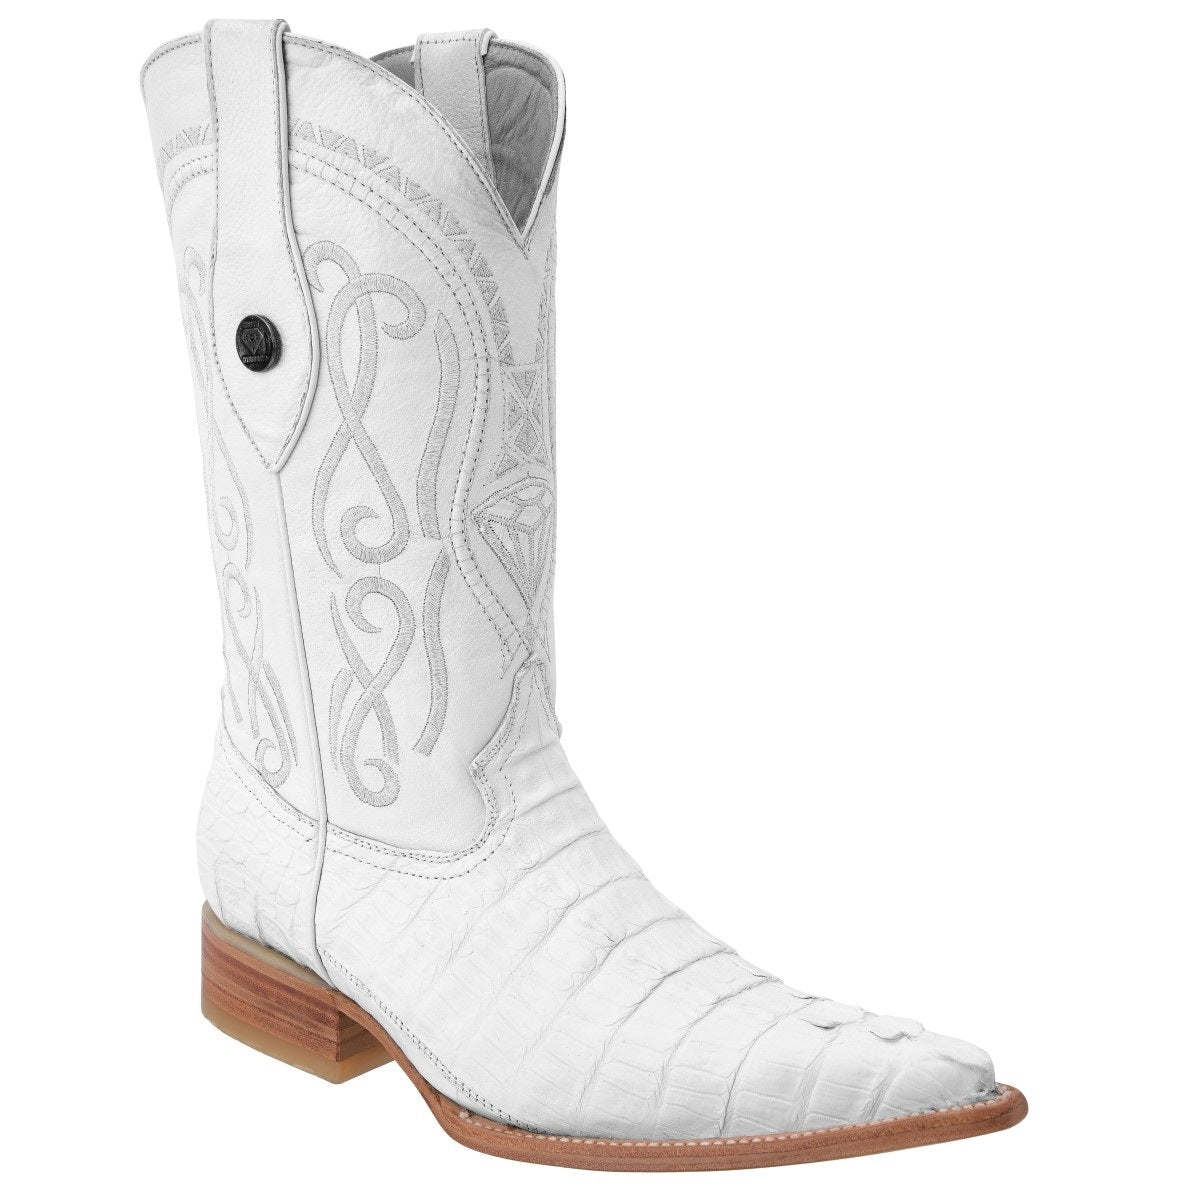 Botas Vaqueras TM-WD0054 - Western Boots